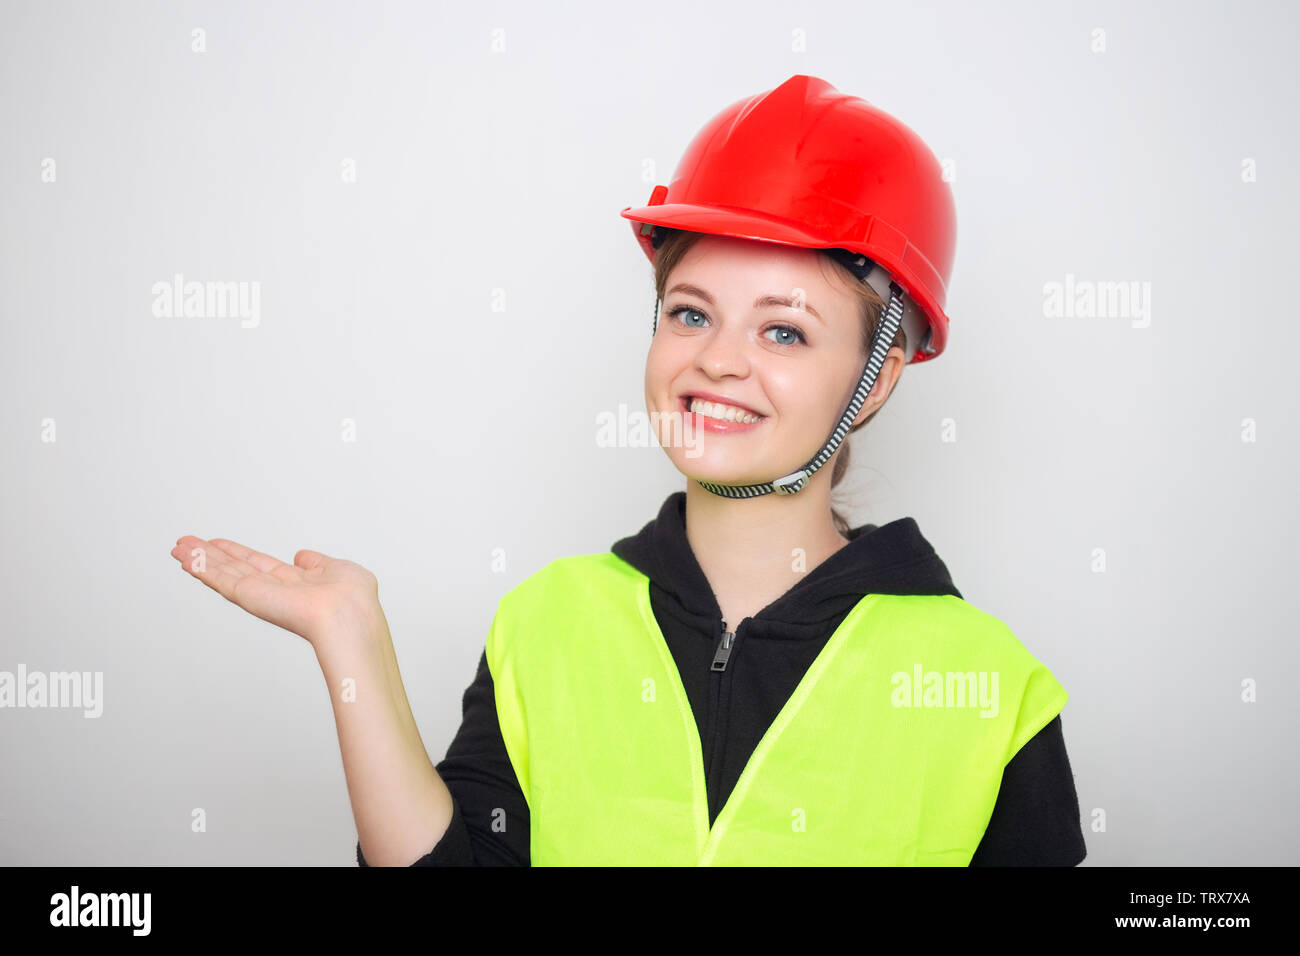 Joven mujer caucásica vestidos de rojo casco de seguridad y chaleco reflectante, sonriendo Foto de stock